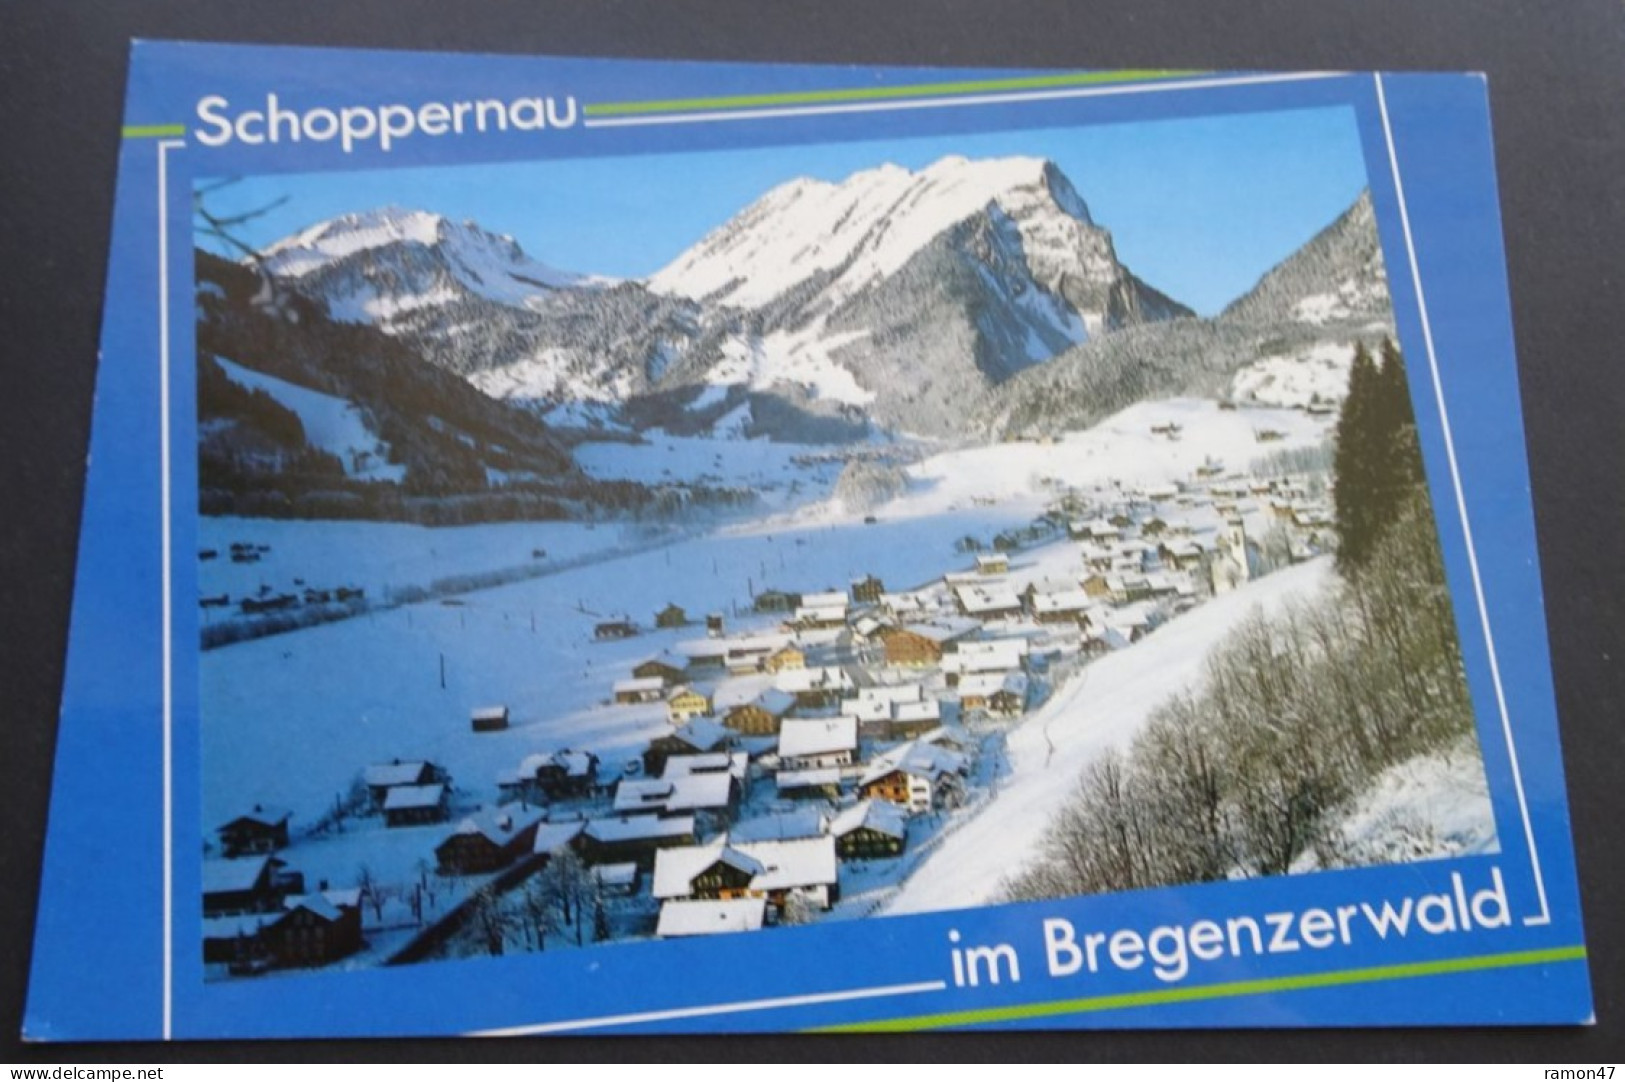 Schoppernau Im Bregenzerwald - Risch-Lau & Gebr. Metz, Salzburg - # BW 49169 - Bregenzerwaldorte